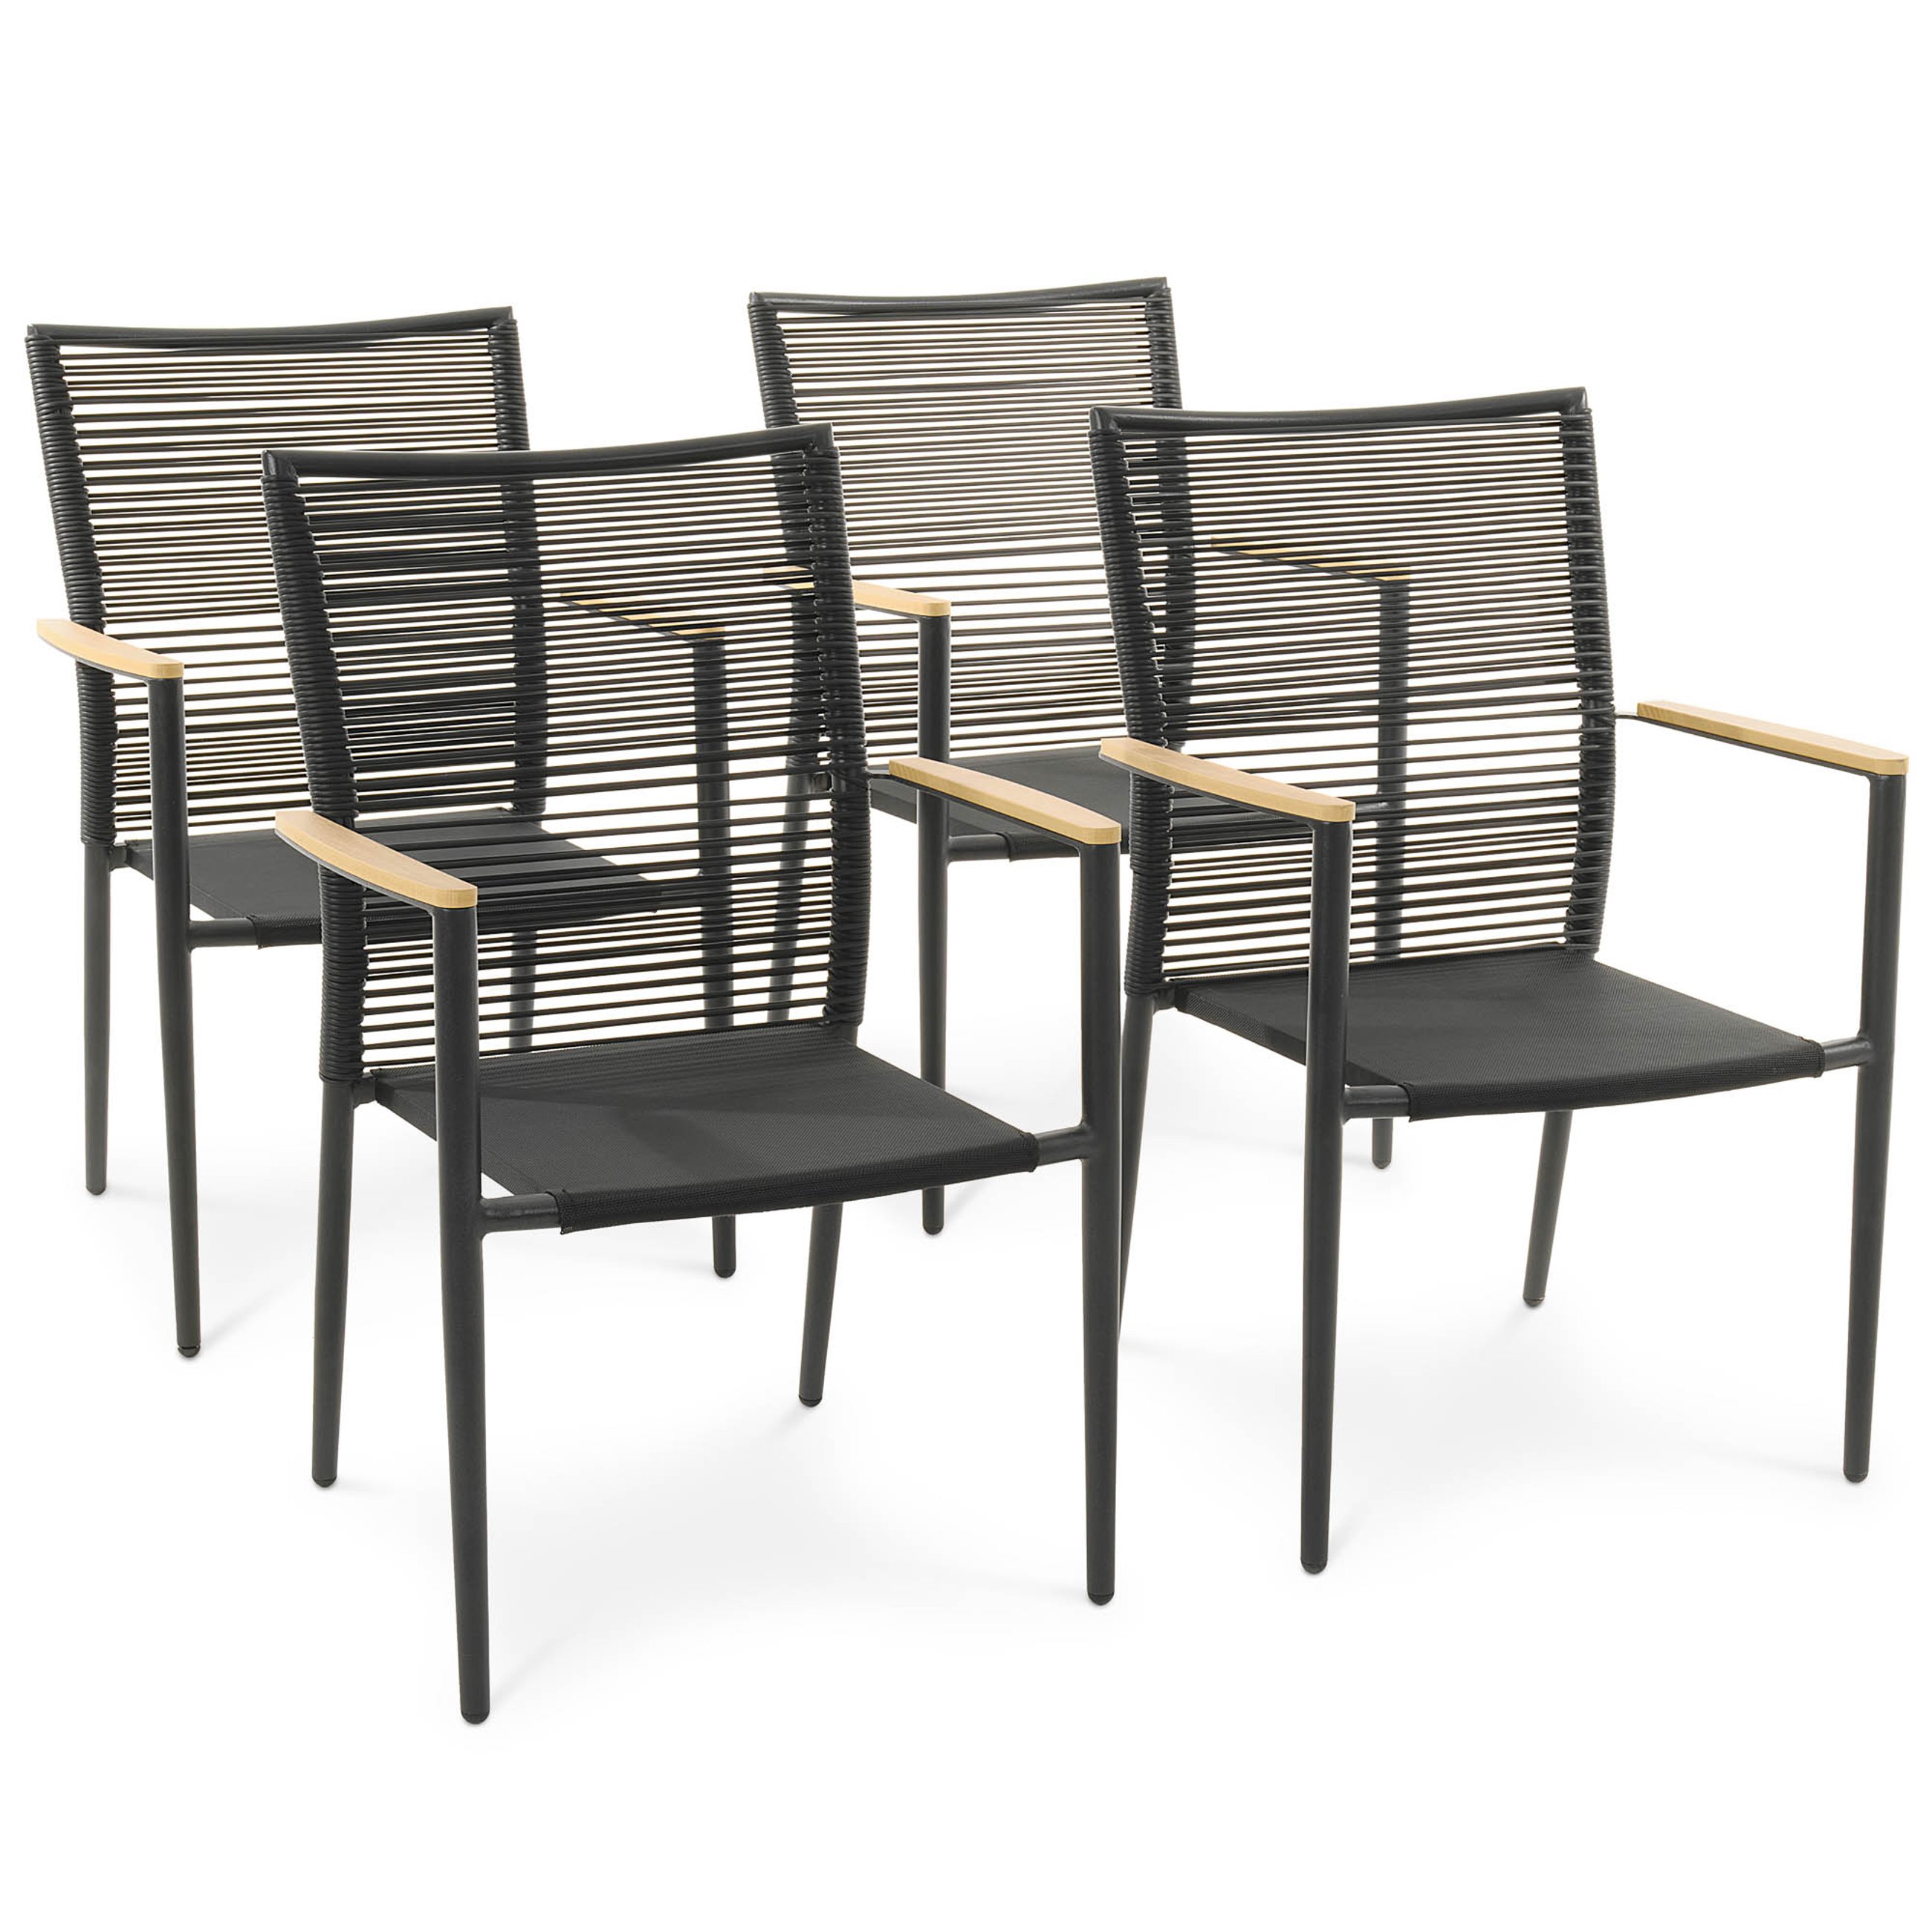 Zestaw 4 krzeseł ogrodowych Asti beżowe marki di volio zostały zaprojektowane z myślą o wygodzie użytkowania